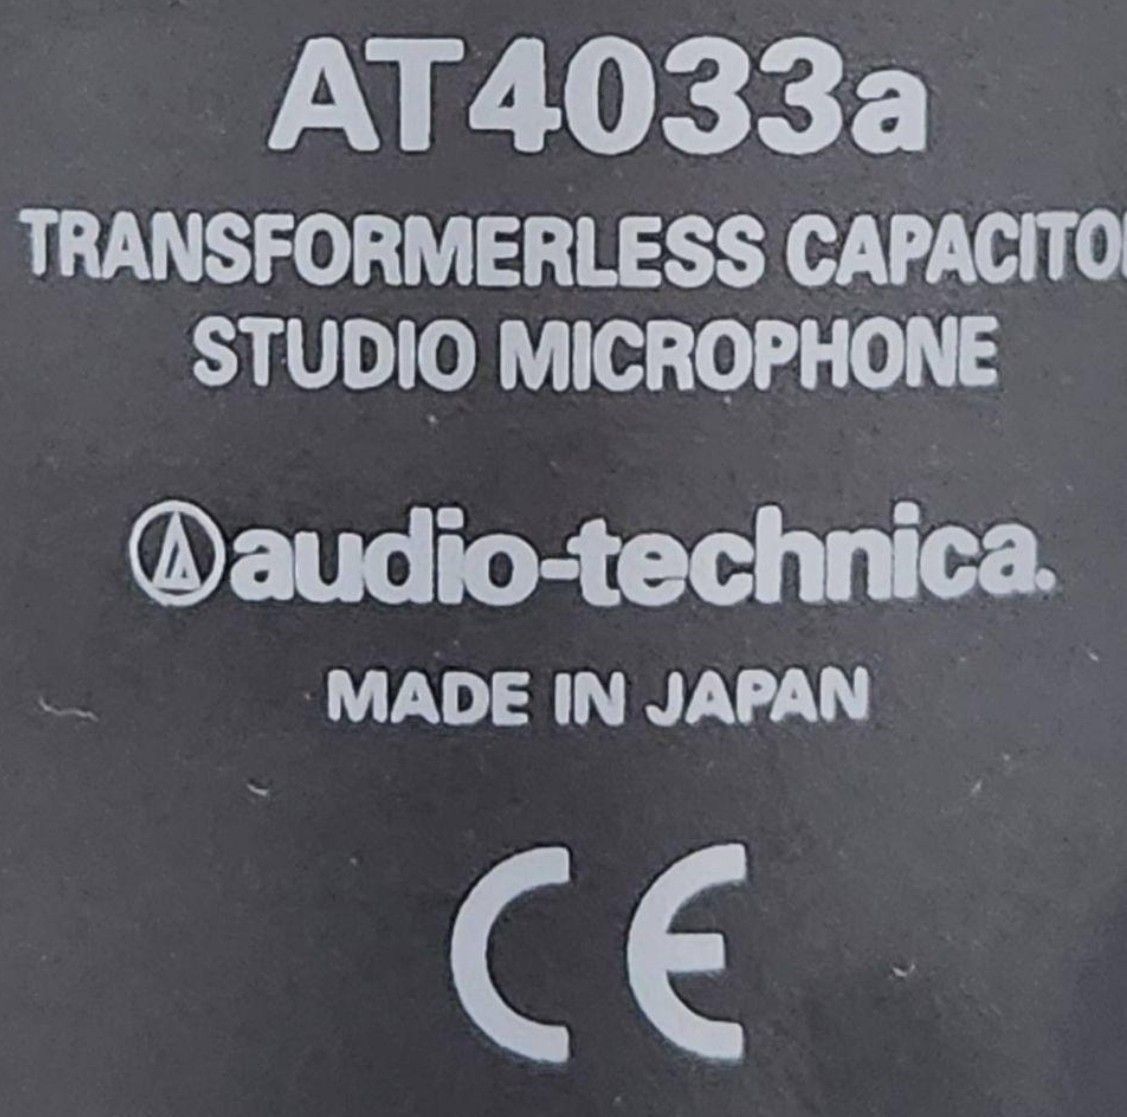 audio-technica オーディオテクニカ コンデンサーマイクロホン AT4033a ショックマウント付 コンデンサーマイク